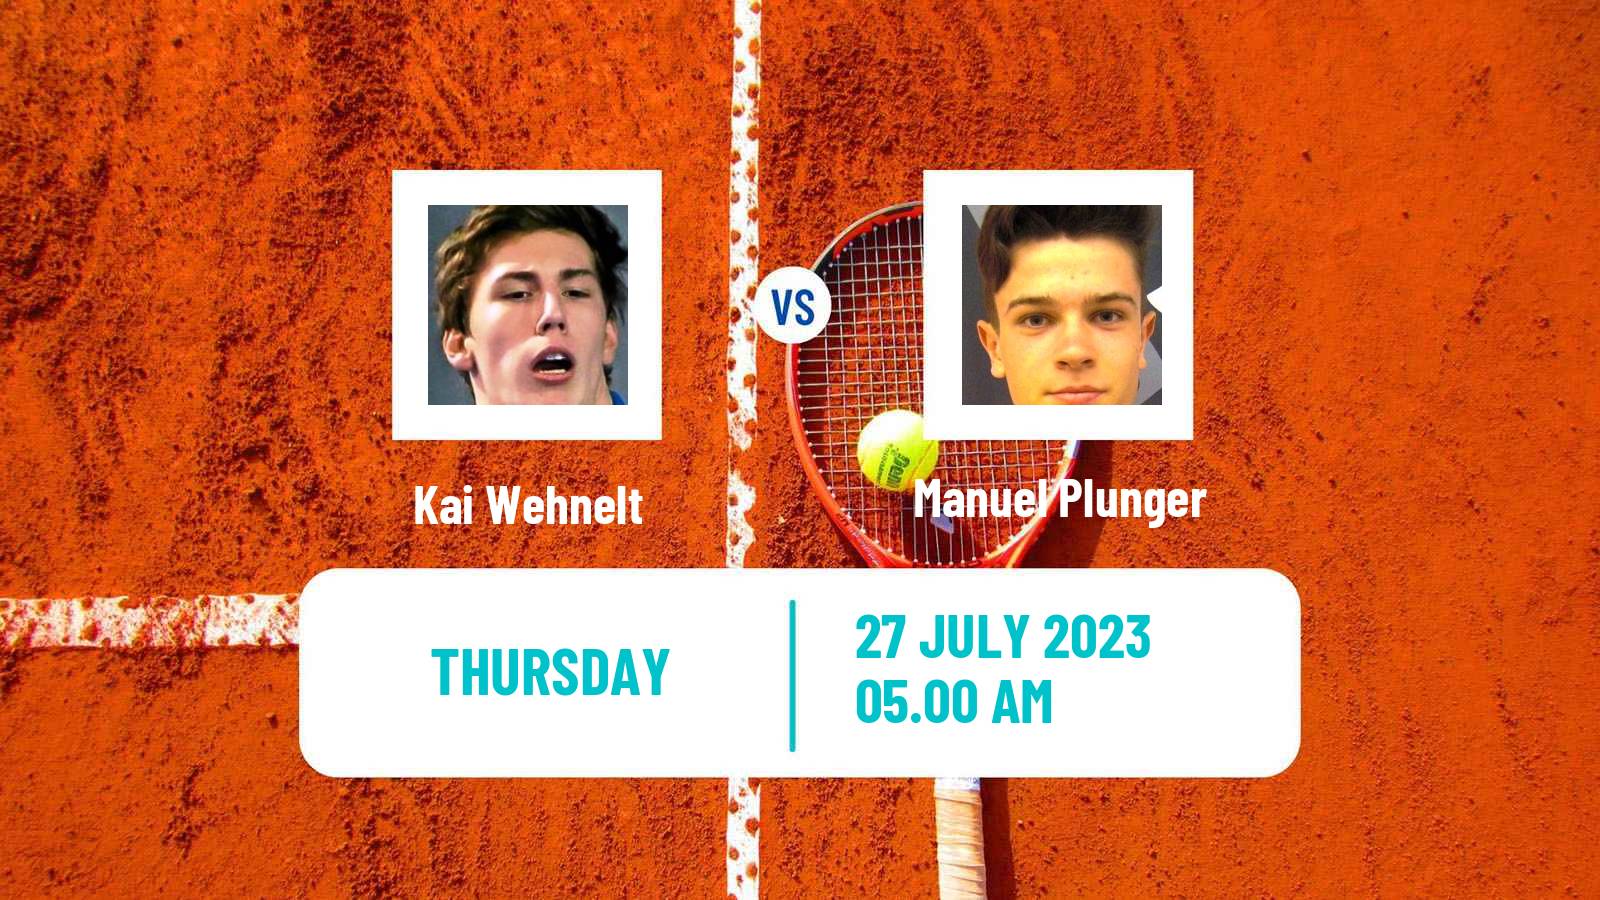 Tennis ITF M25 Kramsach Men Kai Wehnelt - Manuel Plunger